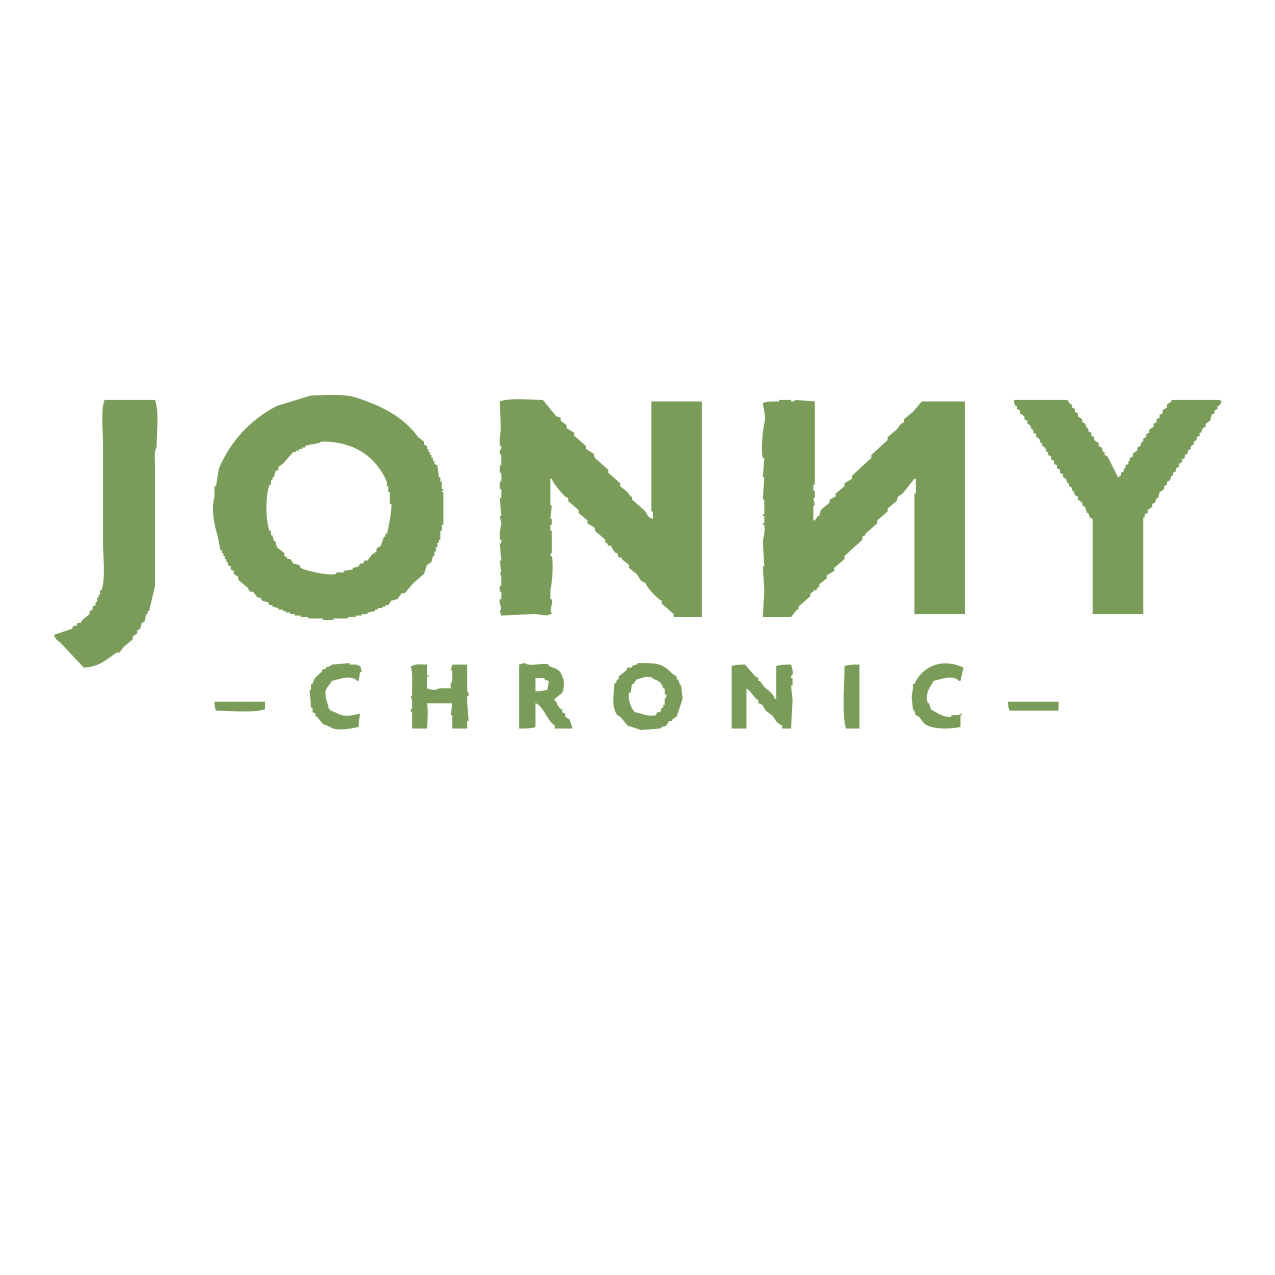 Jonny Chronic Logo